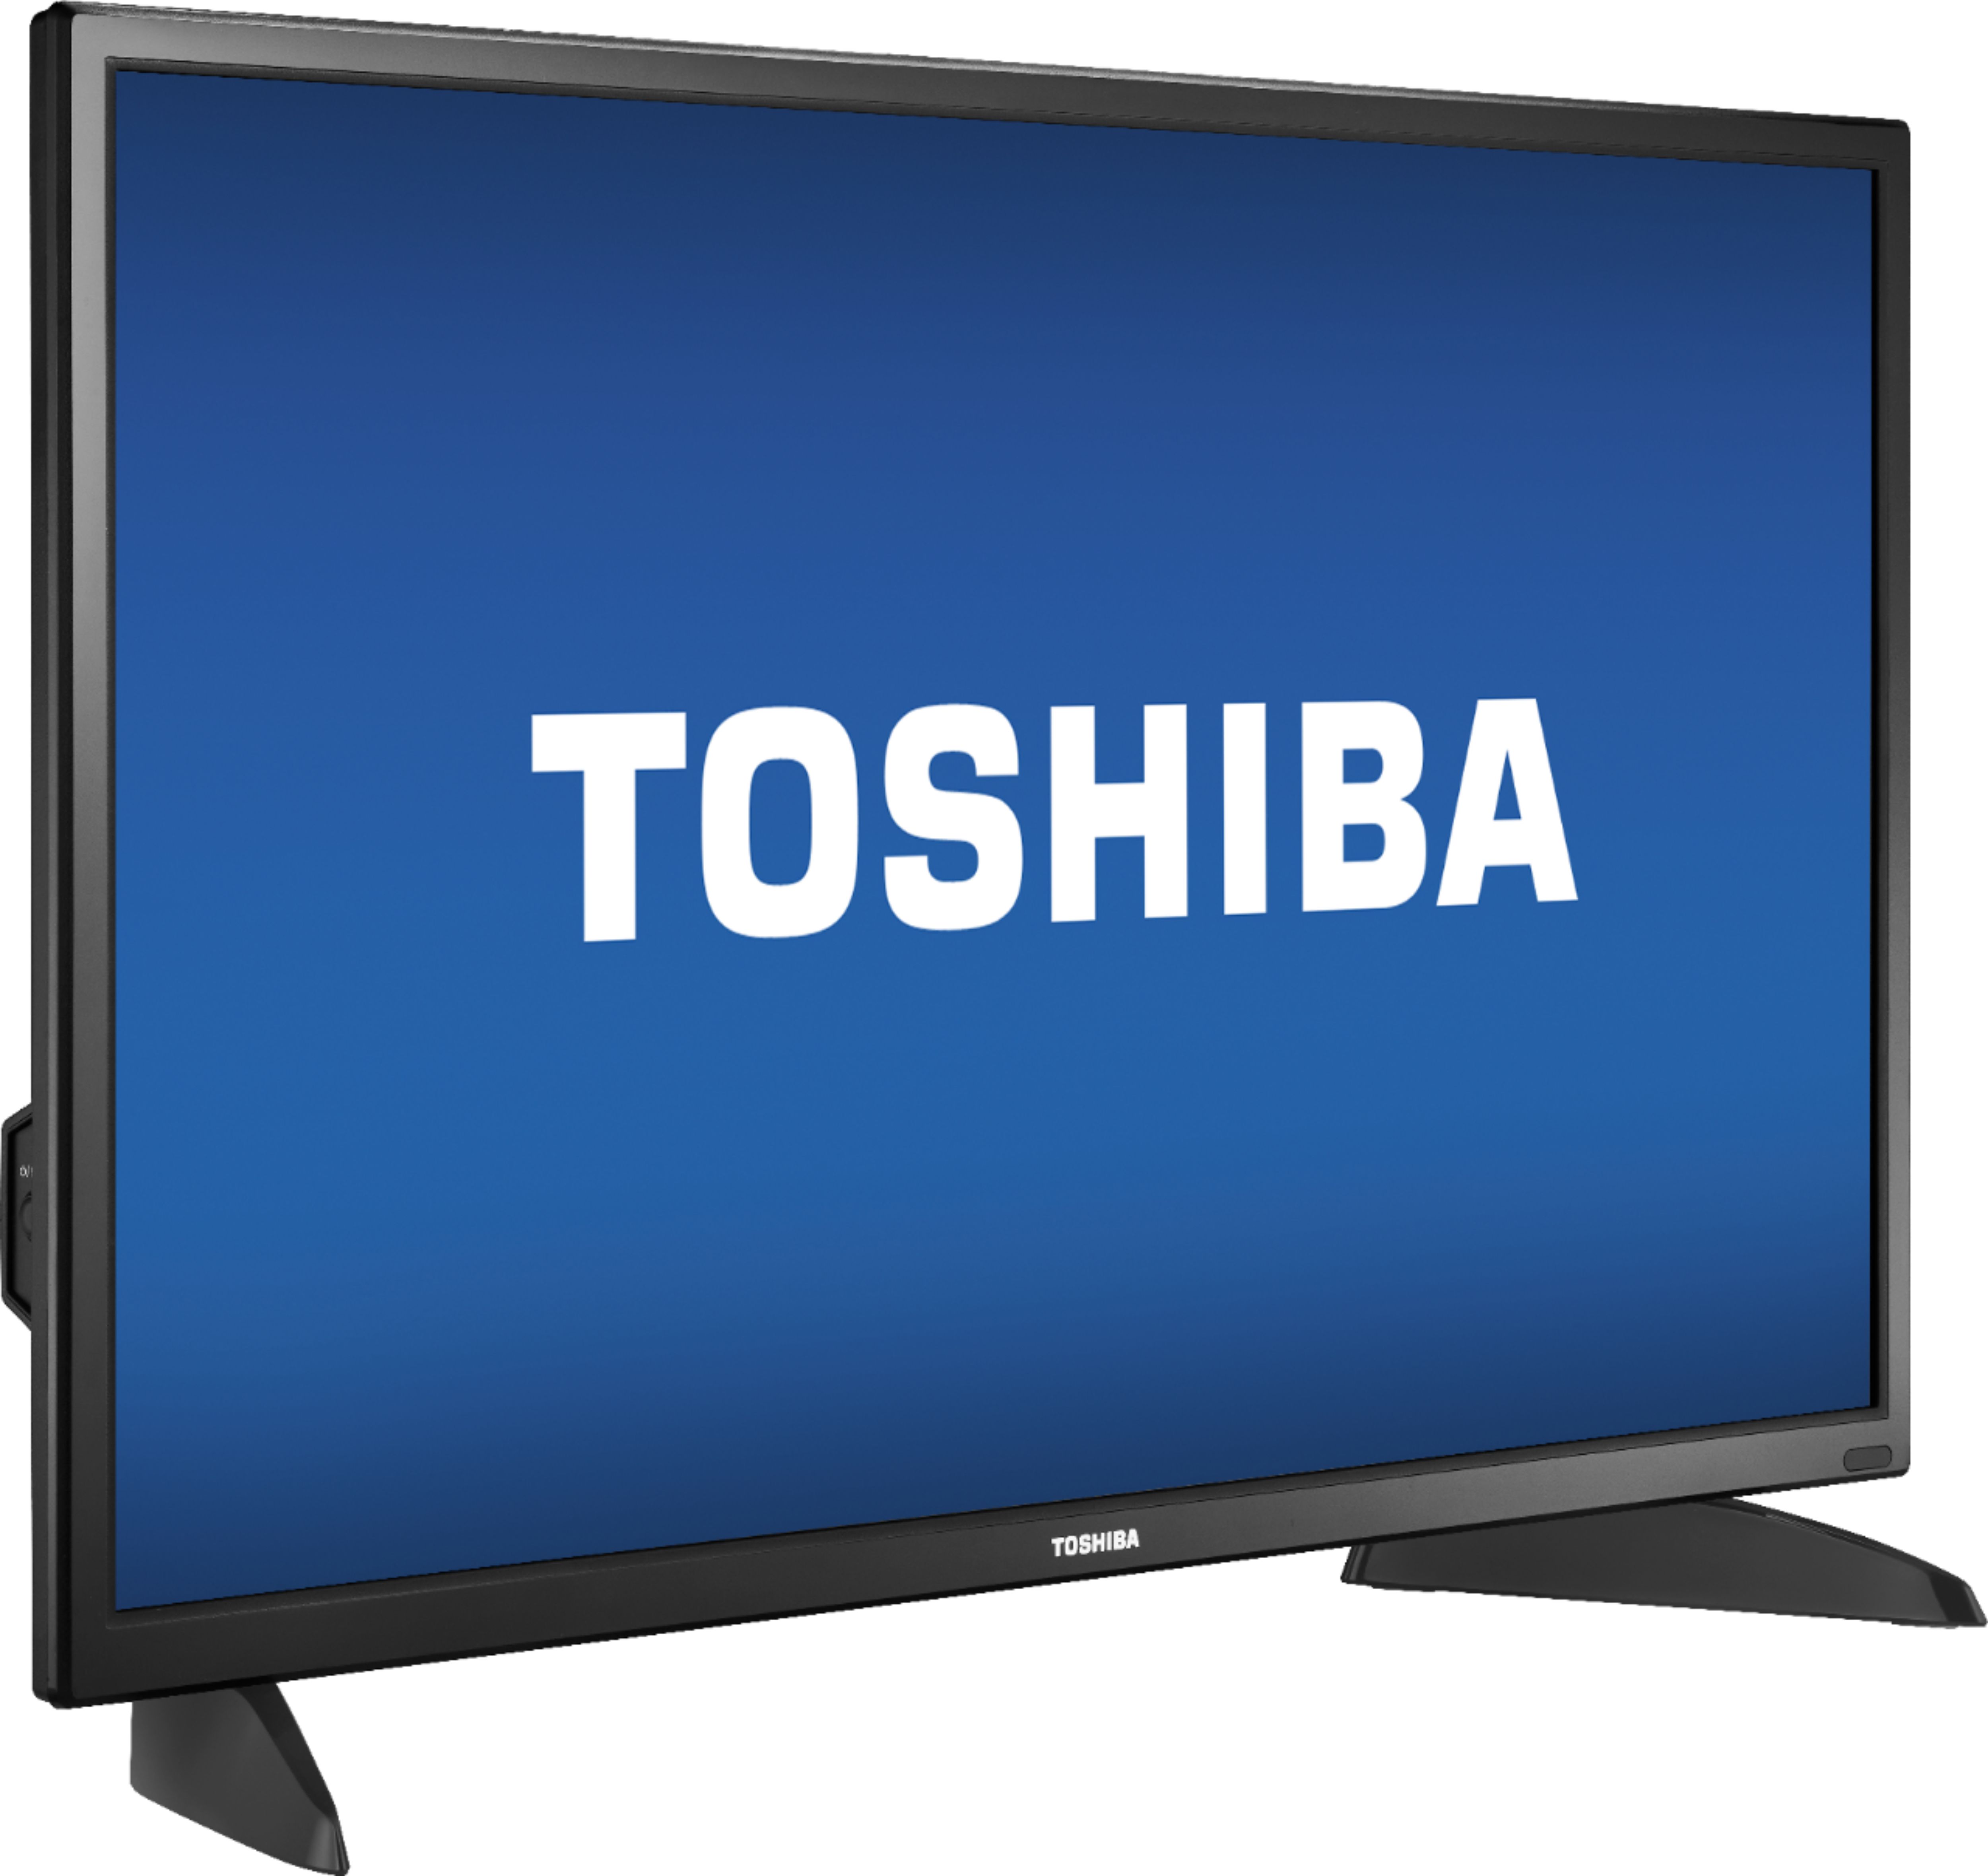 Angle View: Toshiba - N300 14TB Internal SATA NAS Hard Drive for Desktops